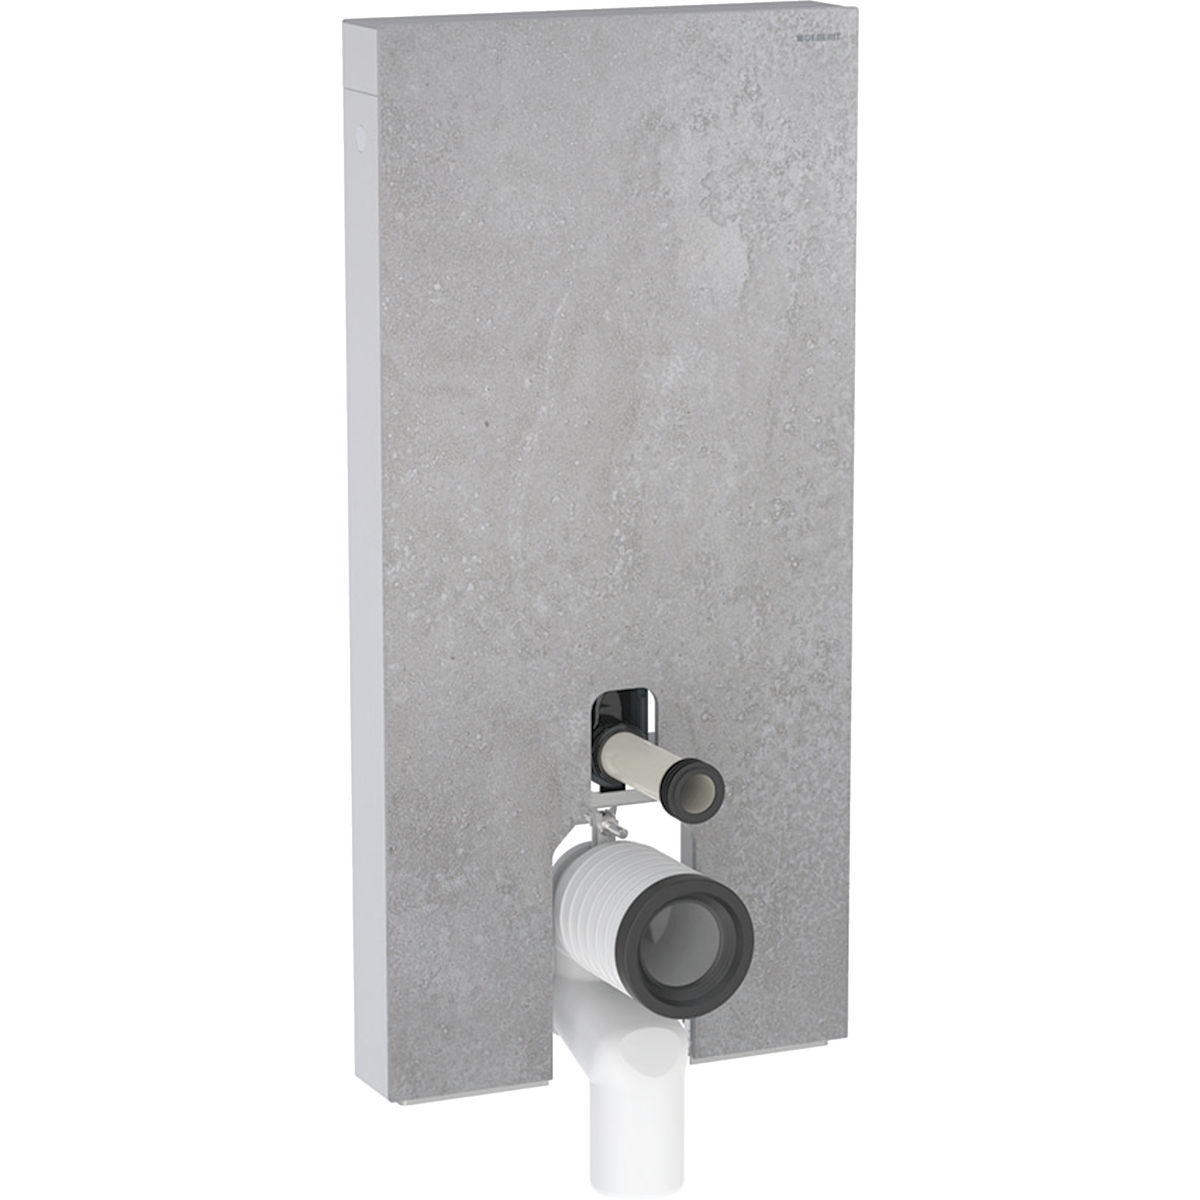 Monolith Plus Sanitärmodul für Stand-WC, 101 cm, Frontverkleidung aus Steinzeug: Steinzeug Betonoptik, Aluminium